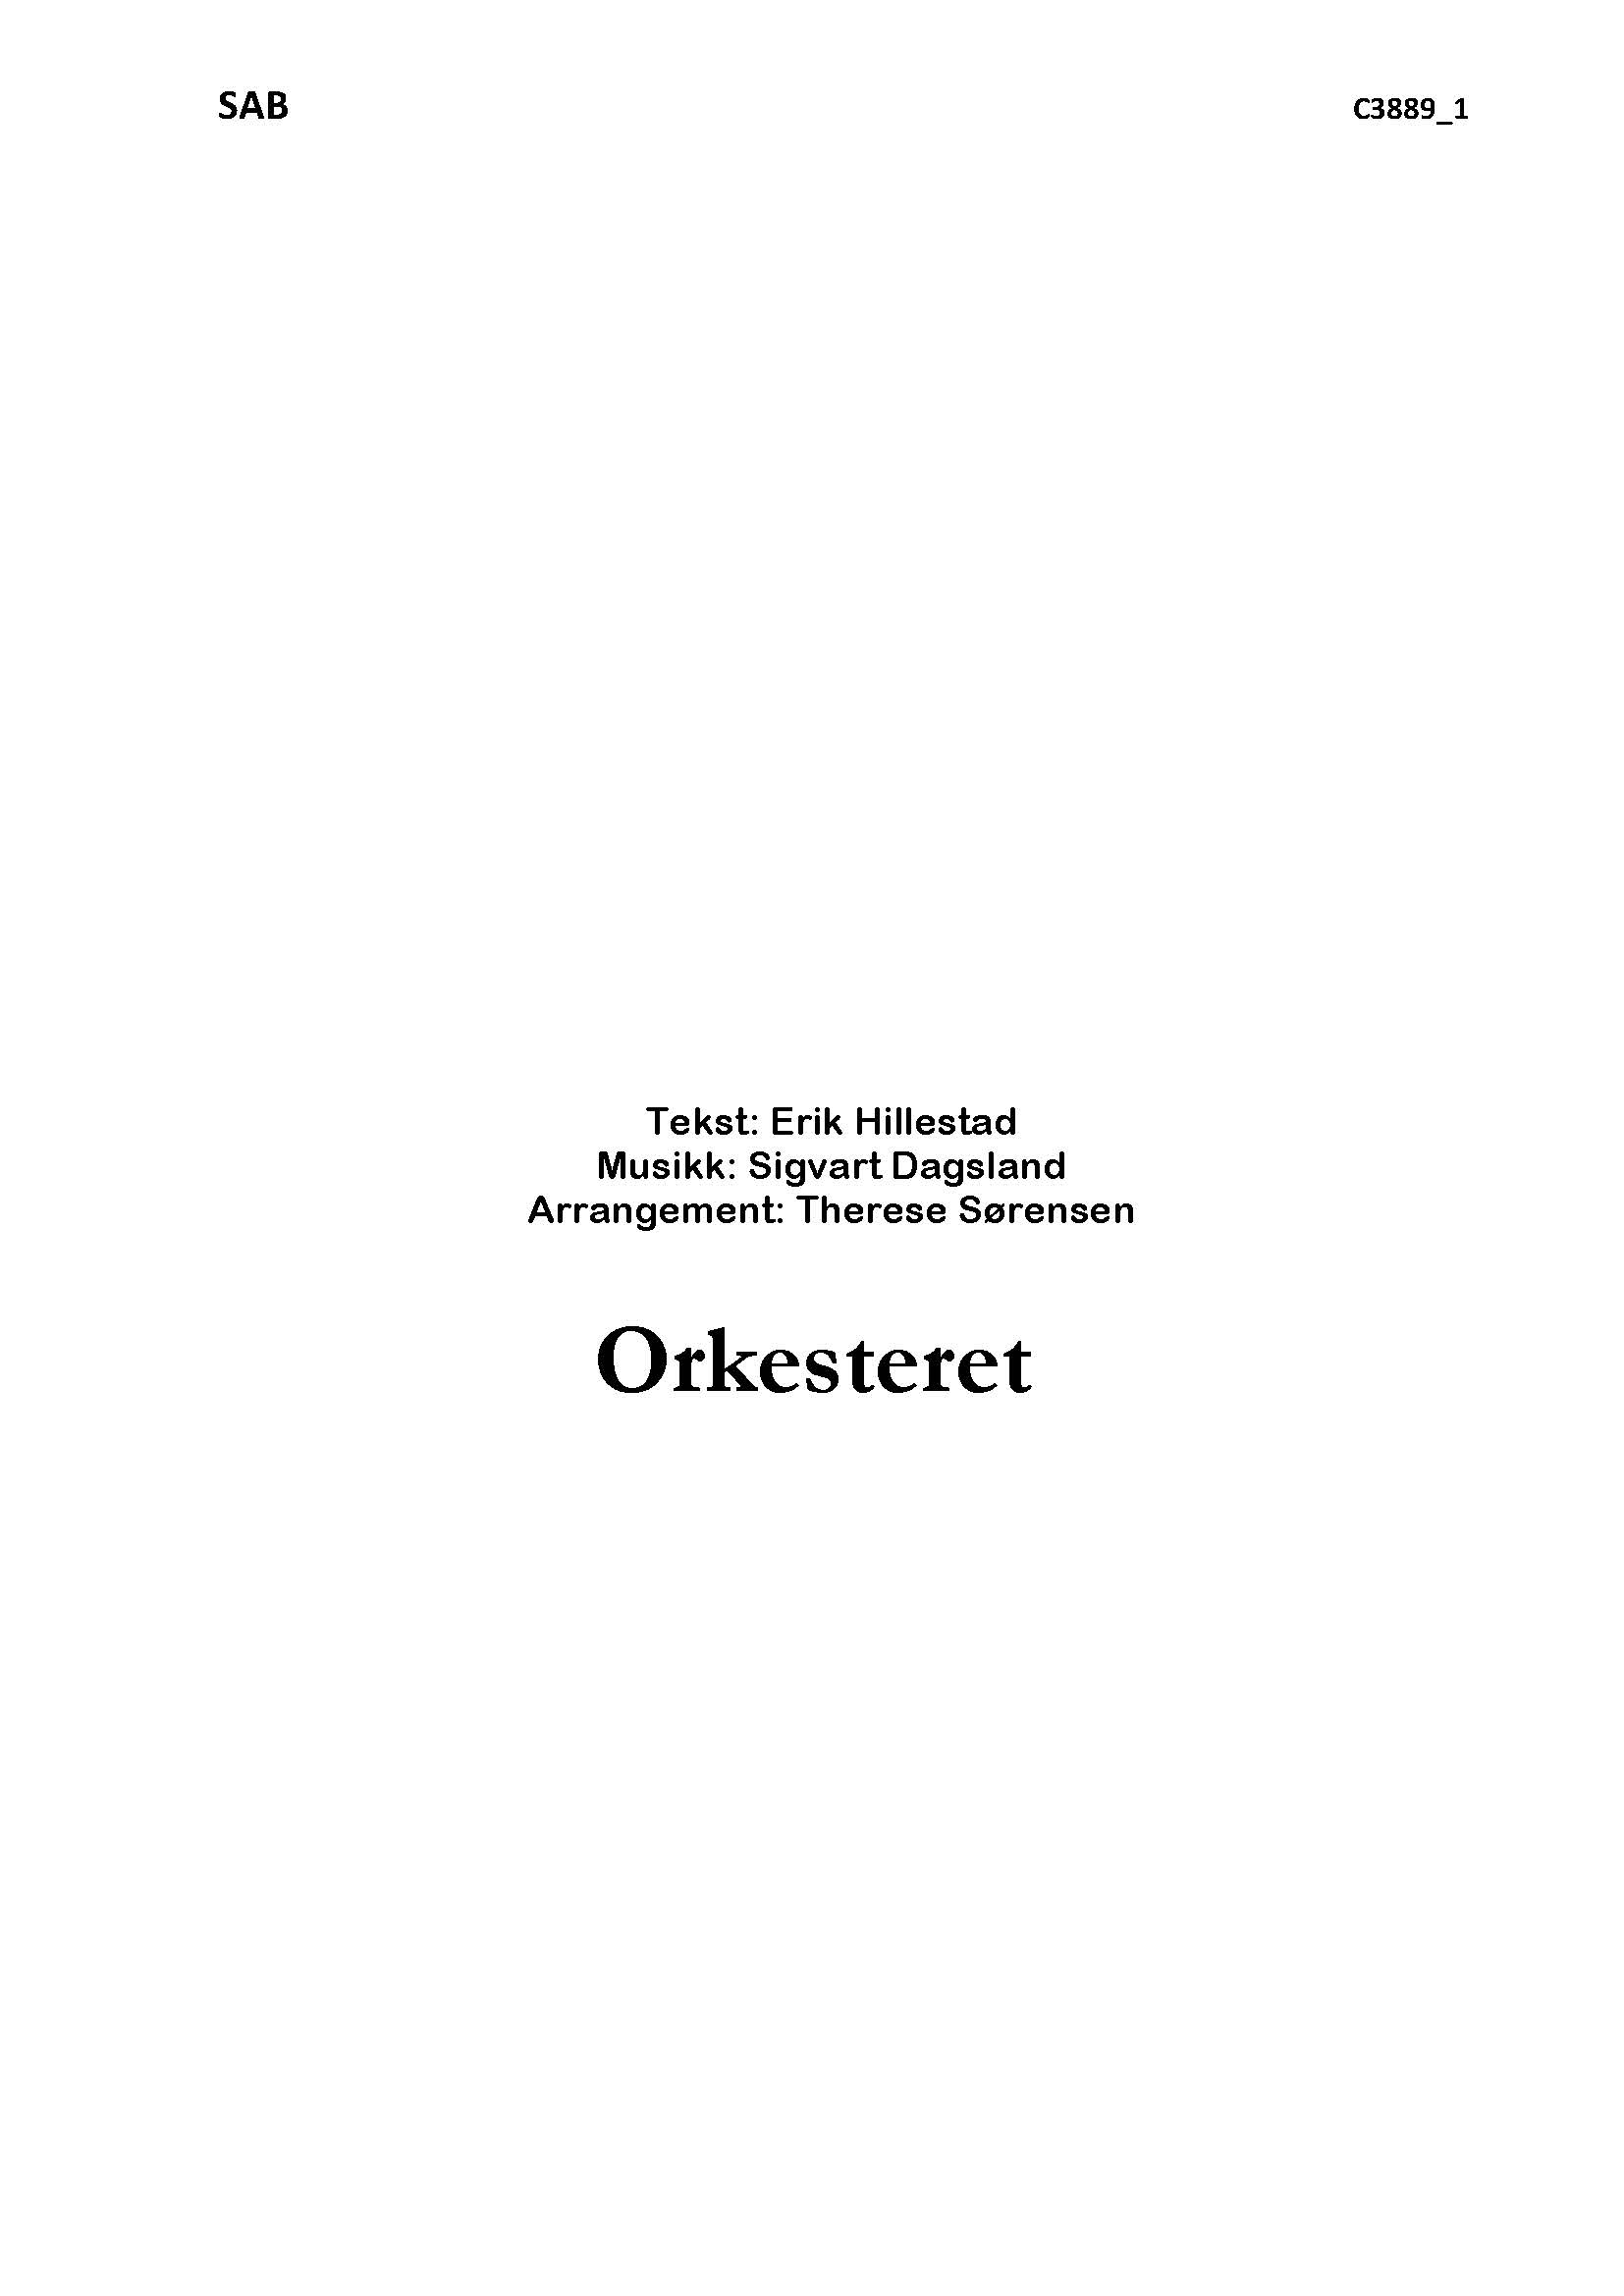 Orkesteret - SAB